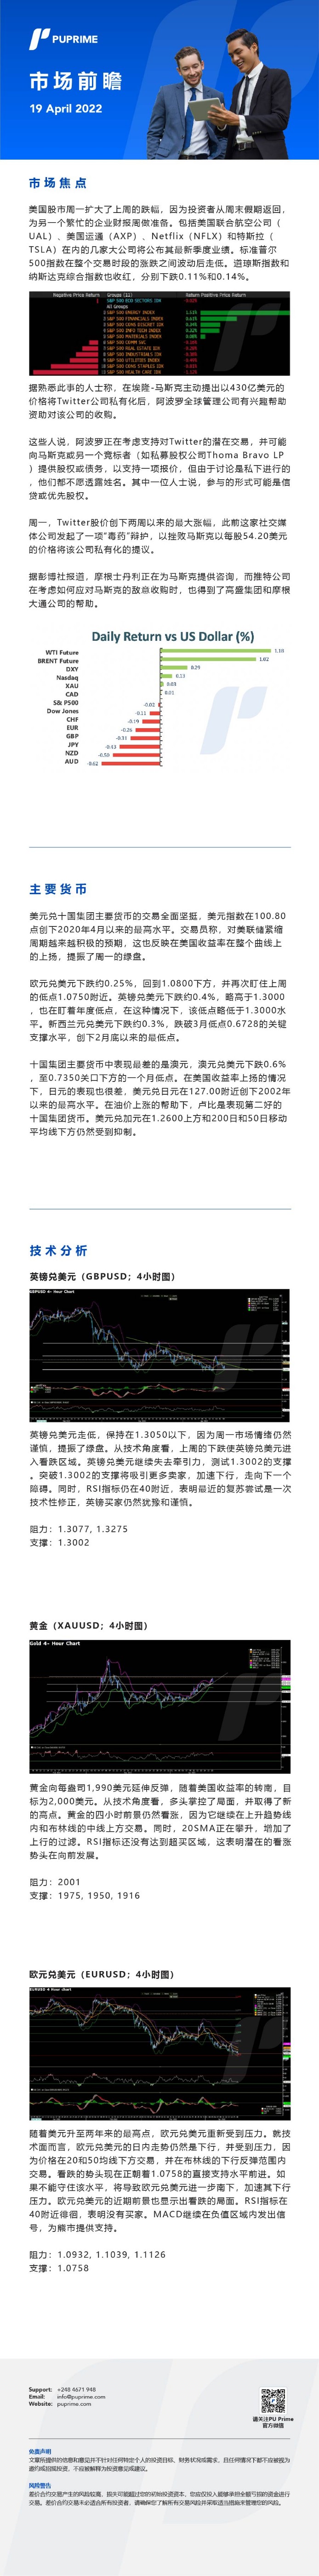 19042022 Daily Market Analysis__CHN.jpg